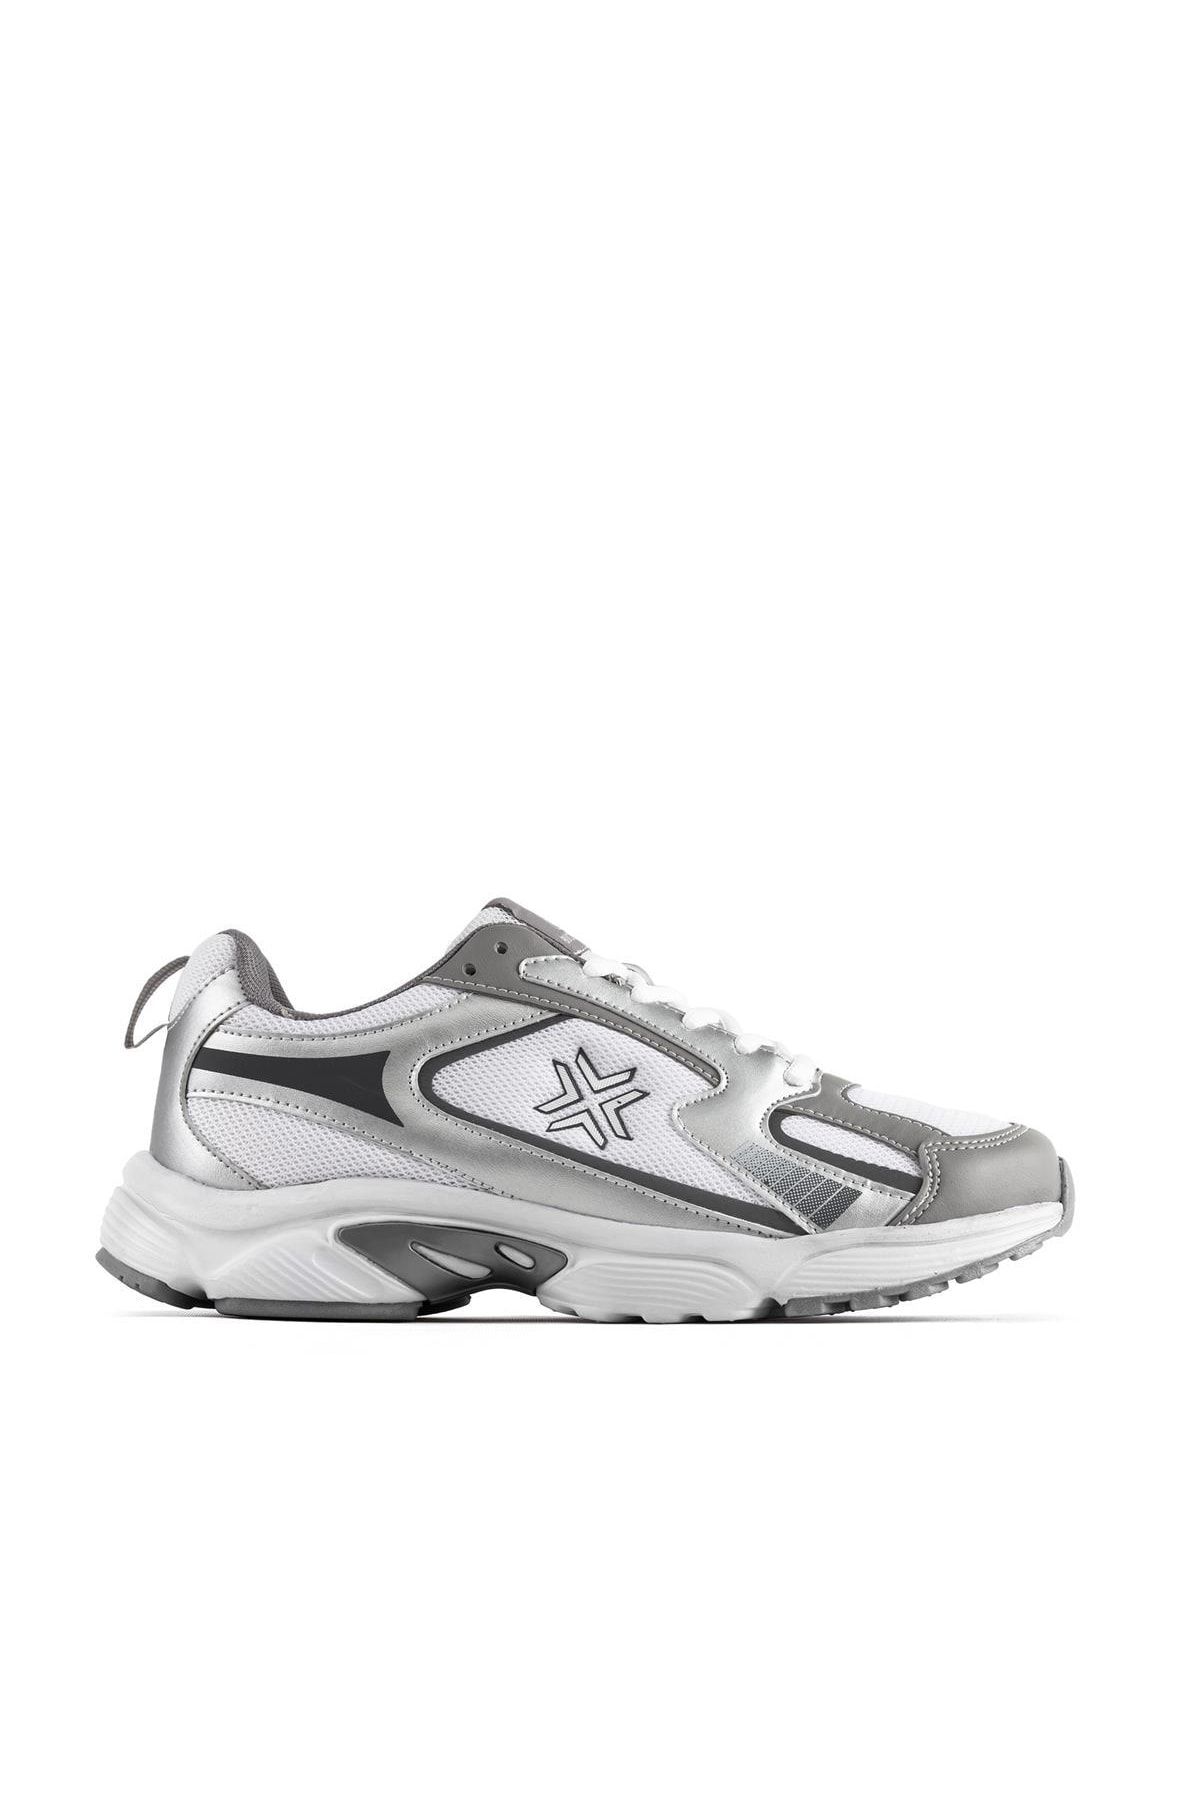 BUCKHEAD 4191 Cairo 530 Style Beyaz Gri Erkek Sneaker Günlük Spor Ayakkabı